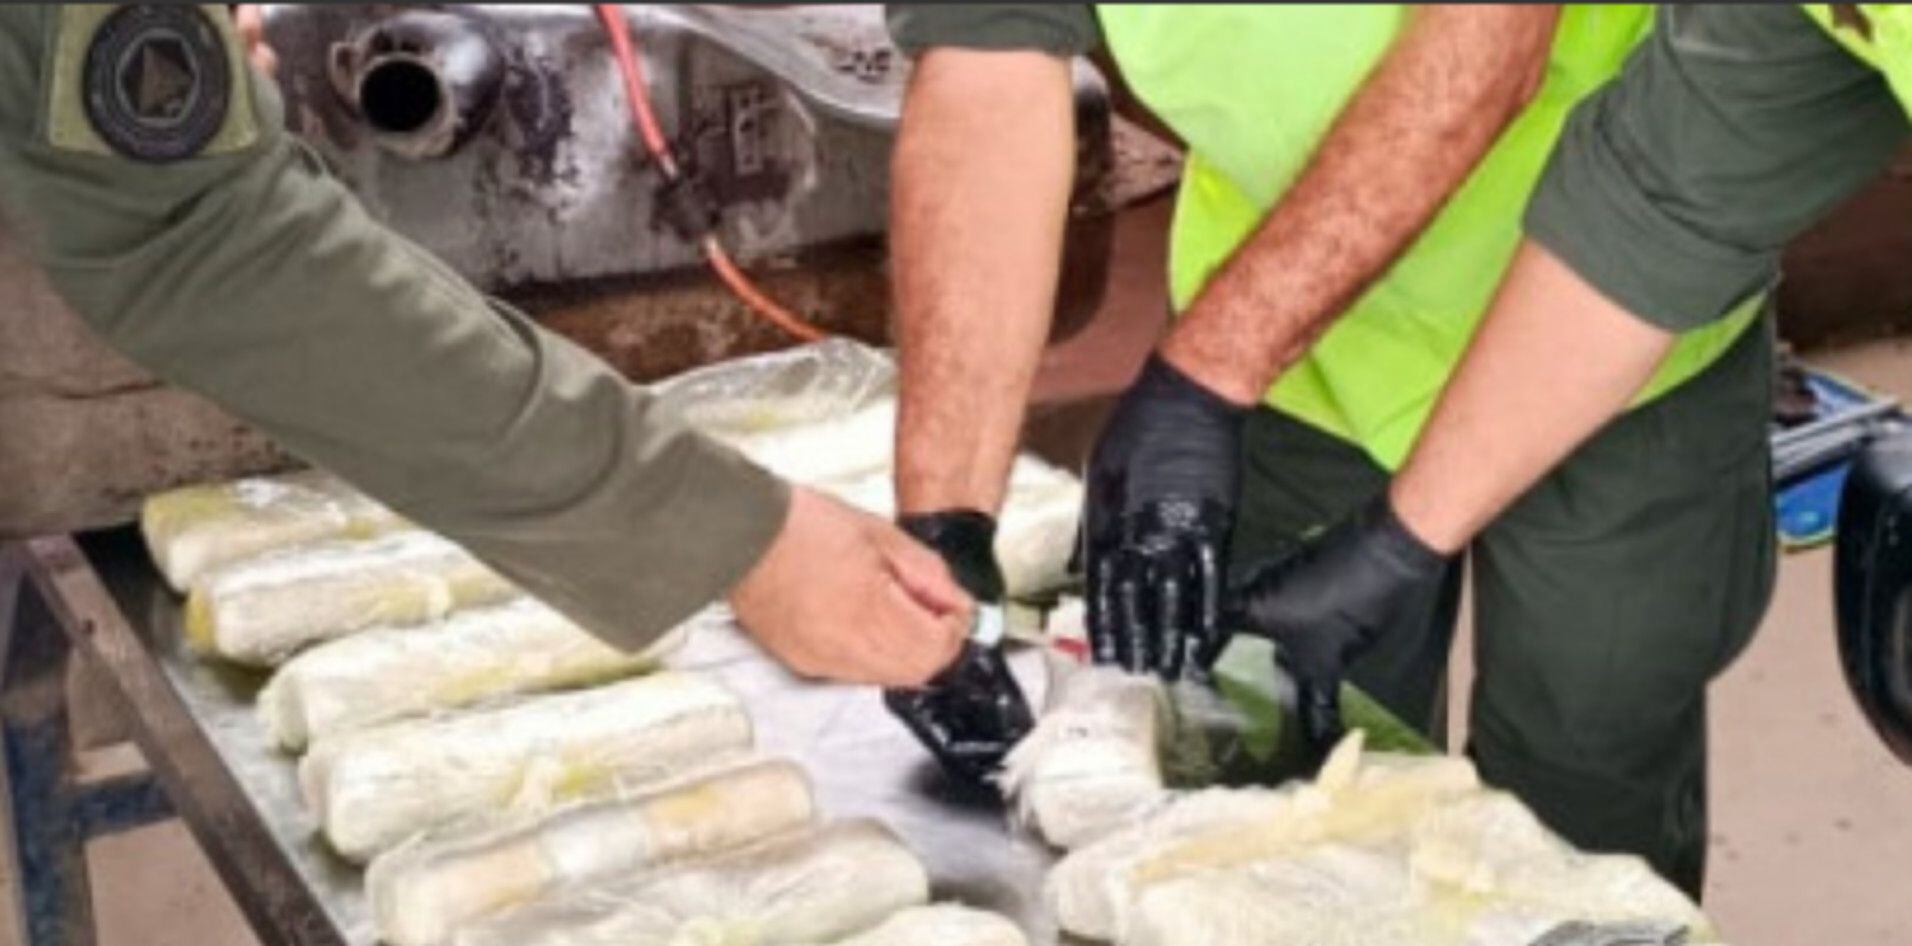 Gendarmería secuestró 25 kilos de cocaína ocultos en el tanque de nafta de una camioneta en Salta (GNA)